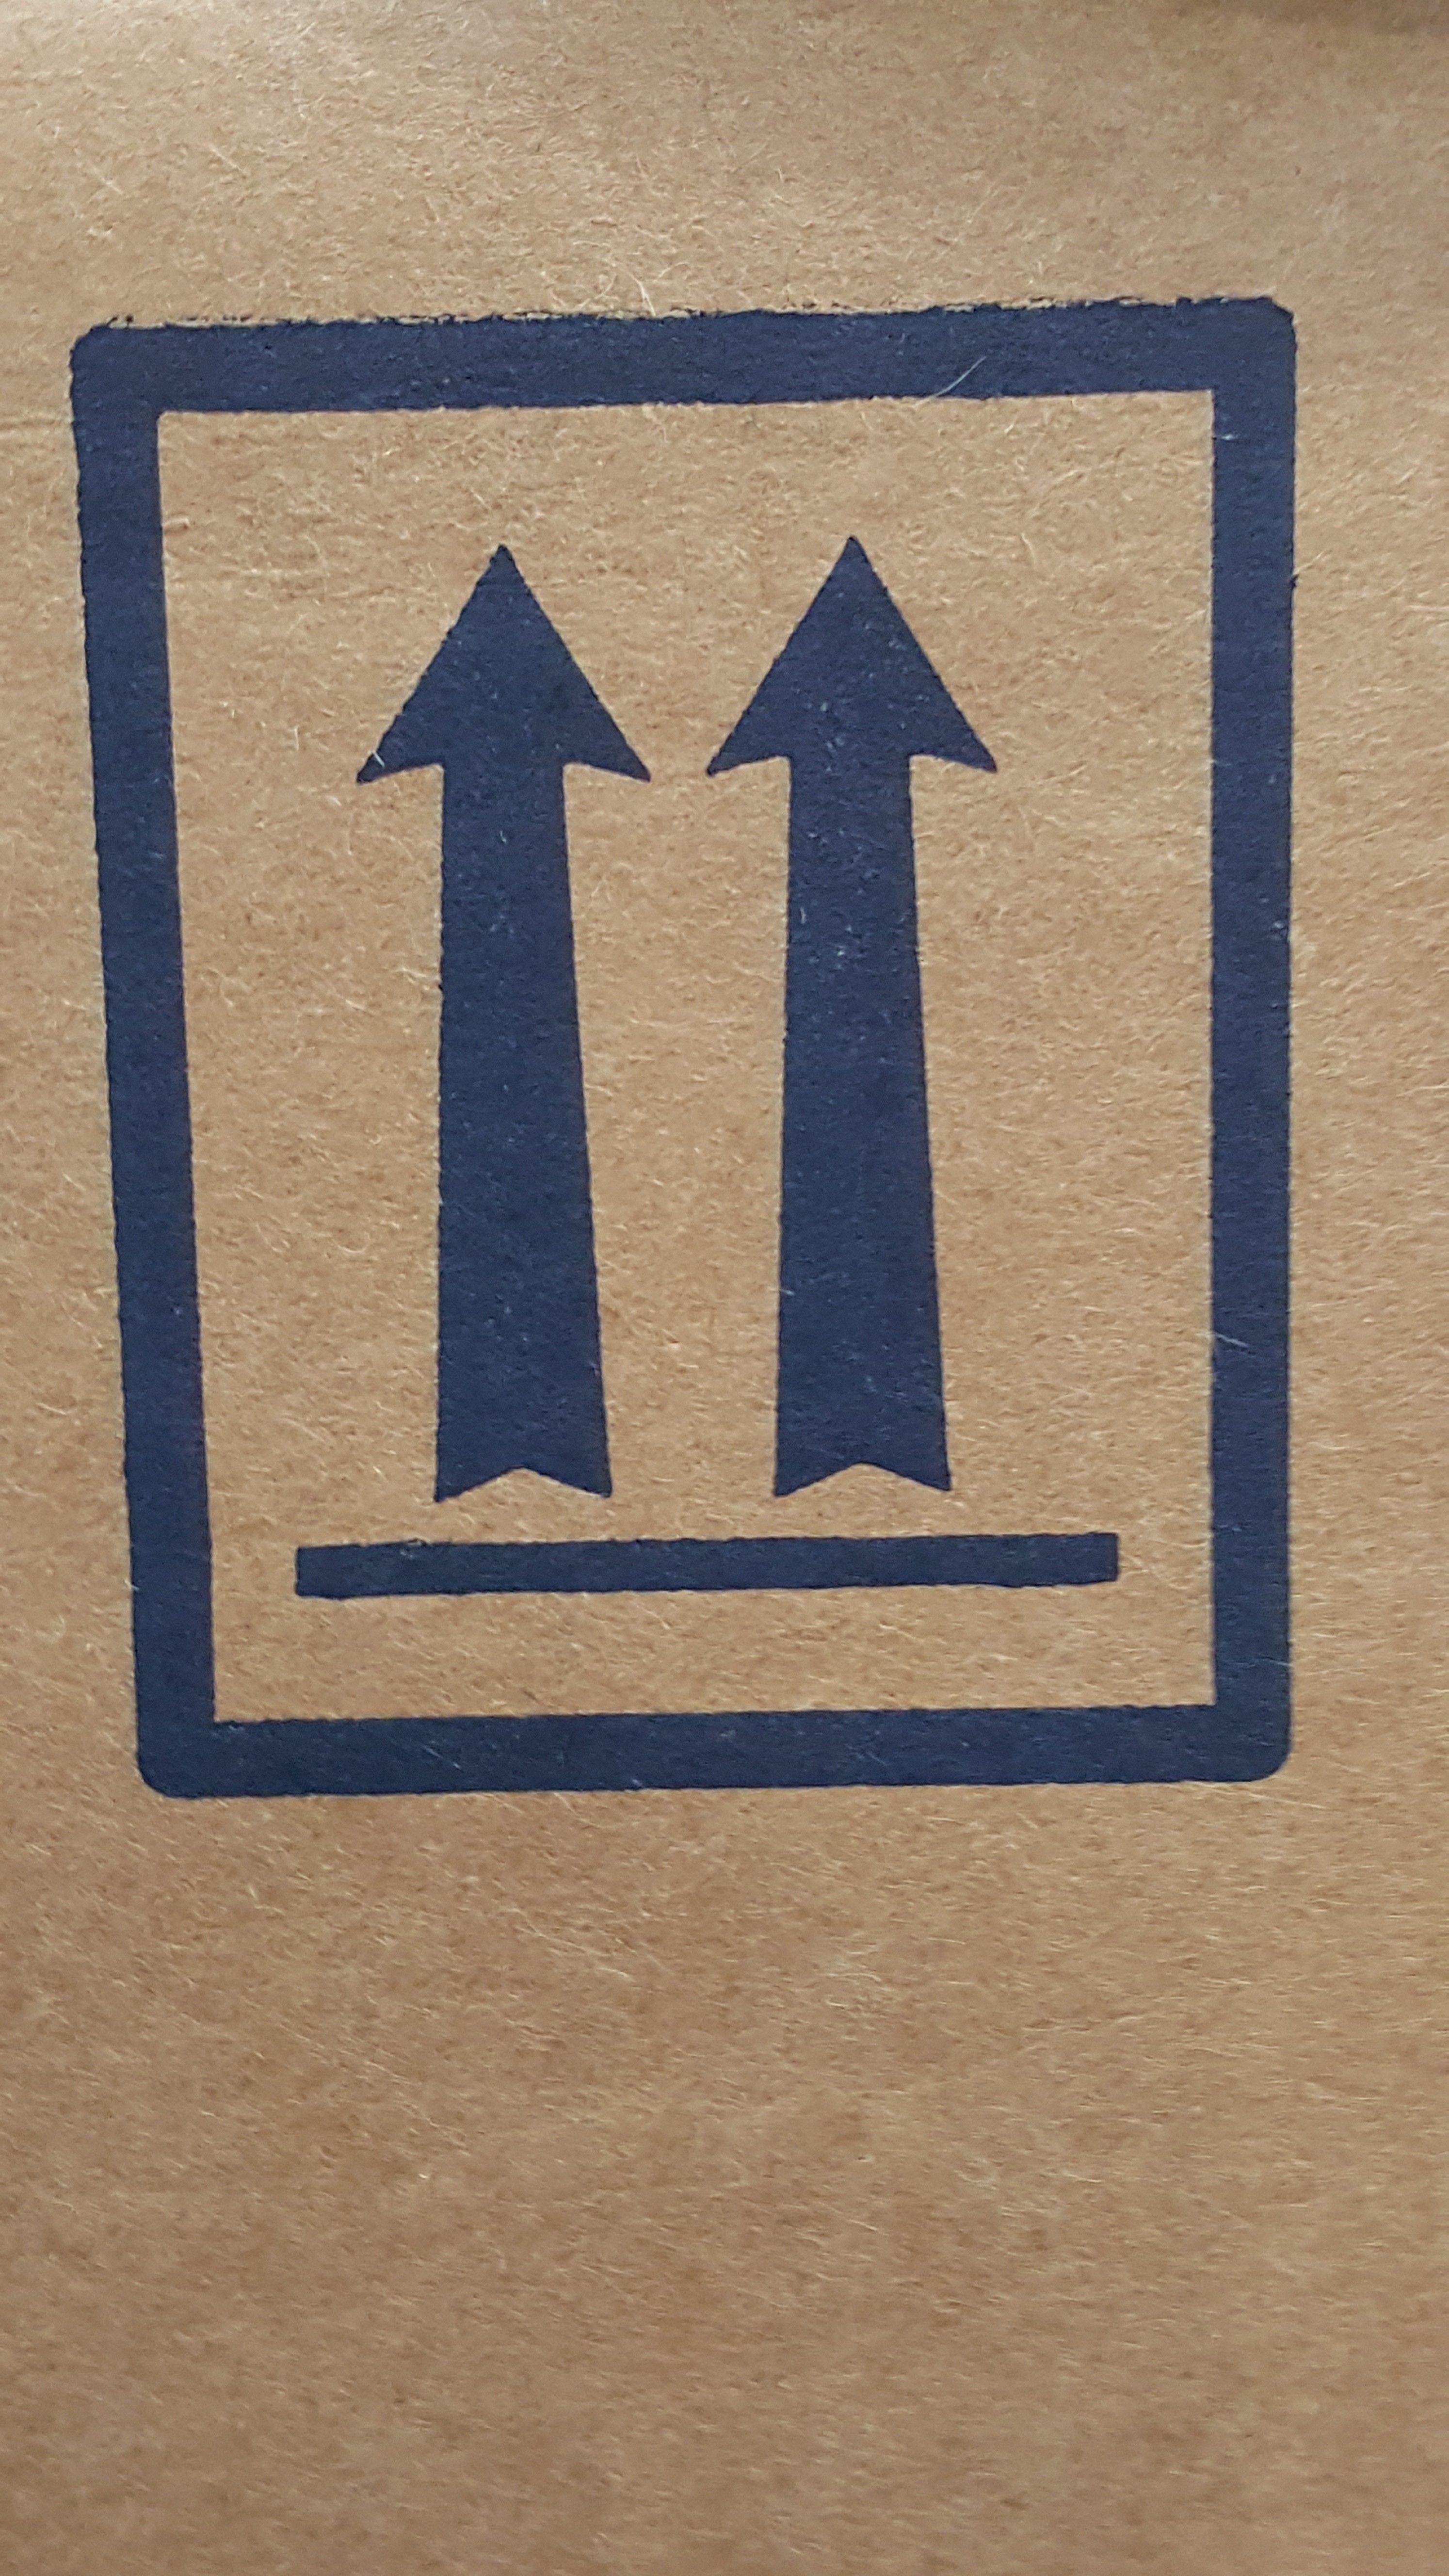 Two Upward Arrows Logo - Package Orientation Arrows on HazMat Packaging Training